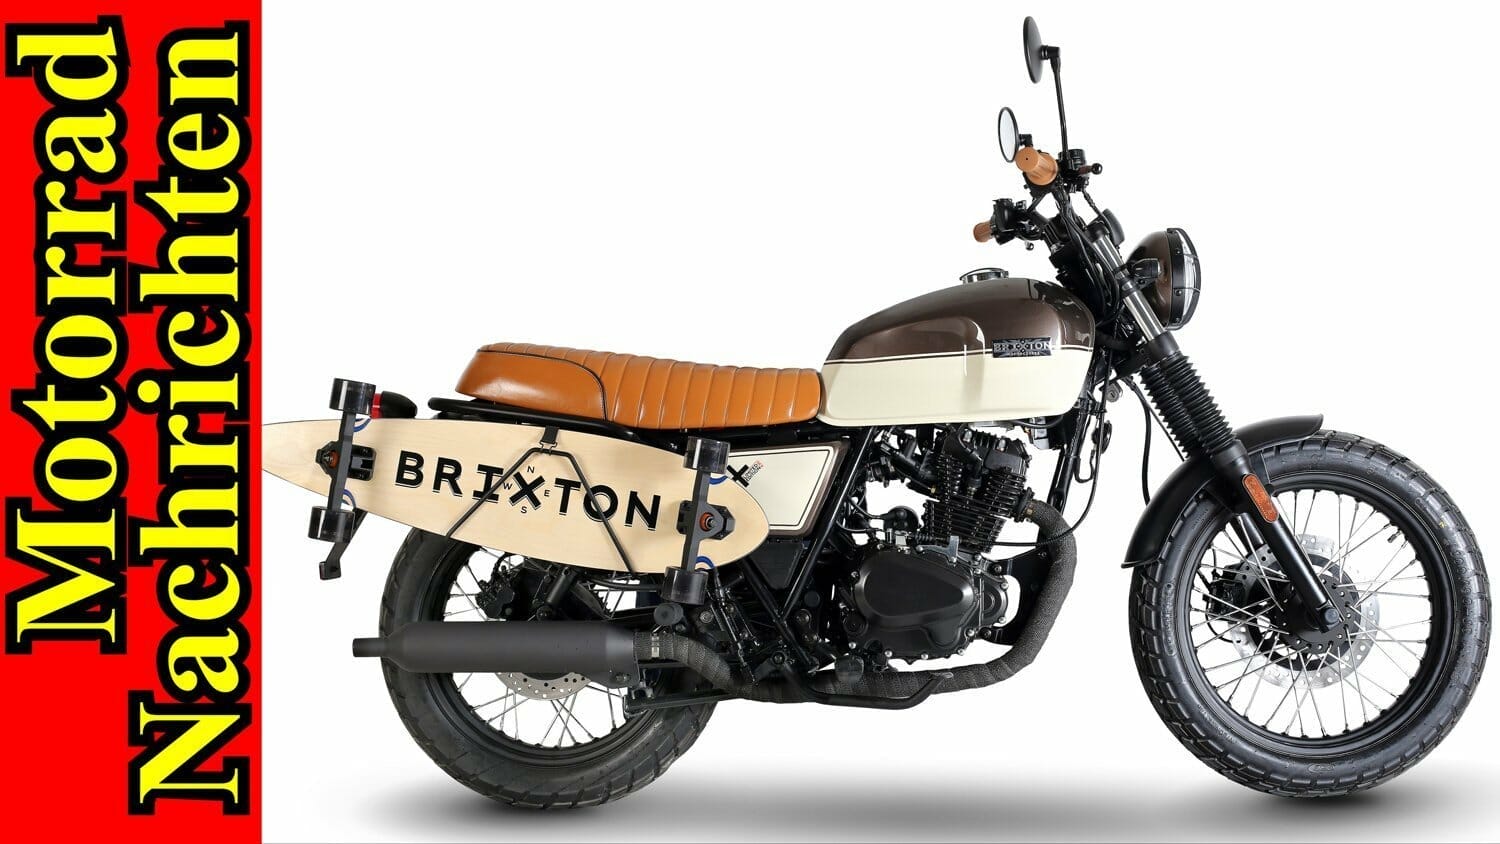 Motorrad Nachrichten 152 (YouTube) – Brixton BX 125 SK8 mit Skateboard | Royal Enfield Classic 500 Redditch Edition